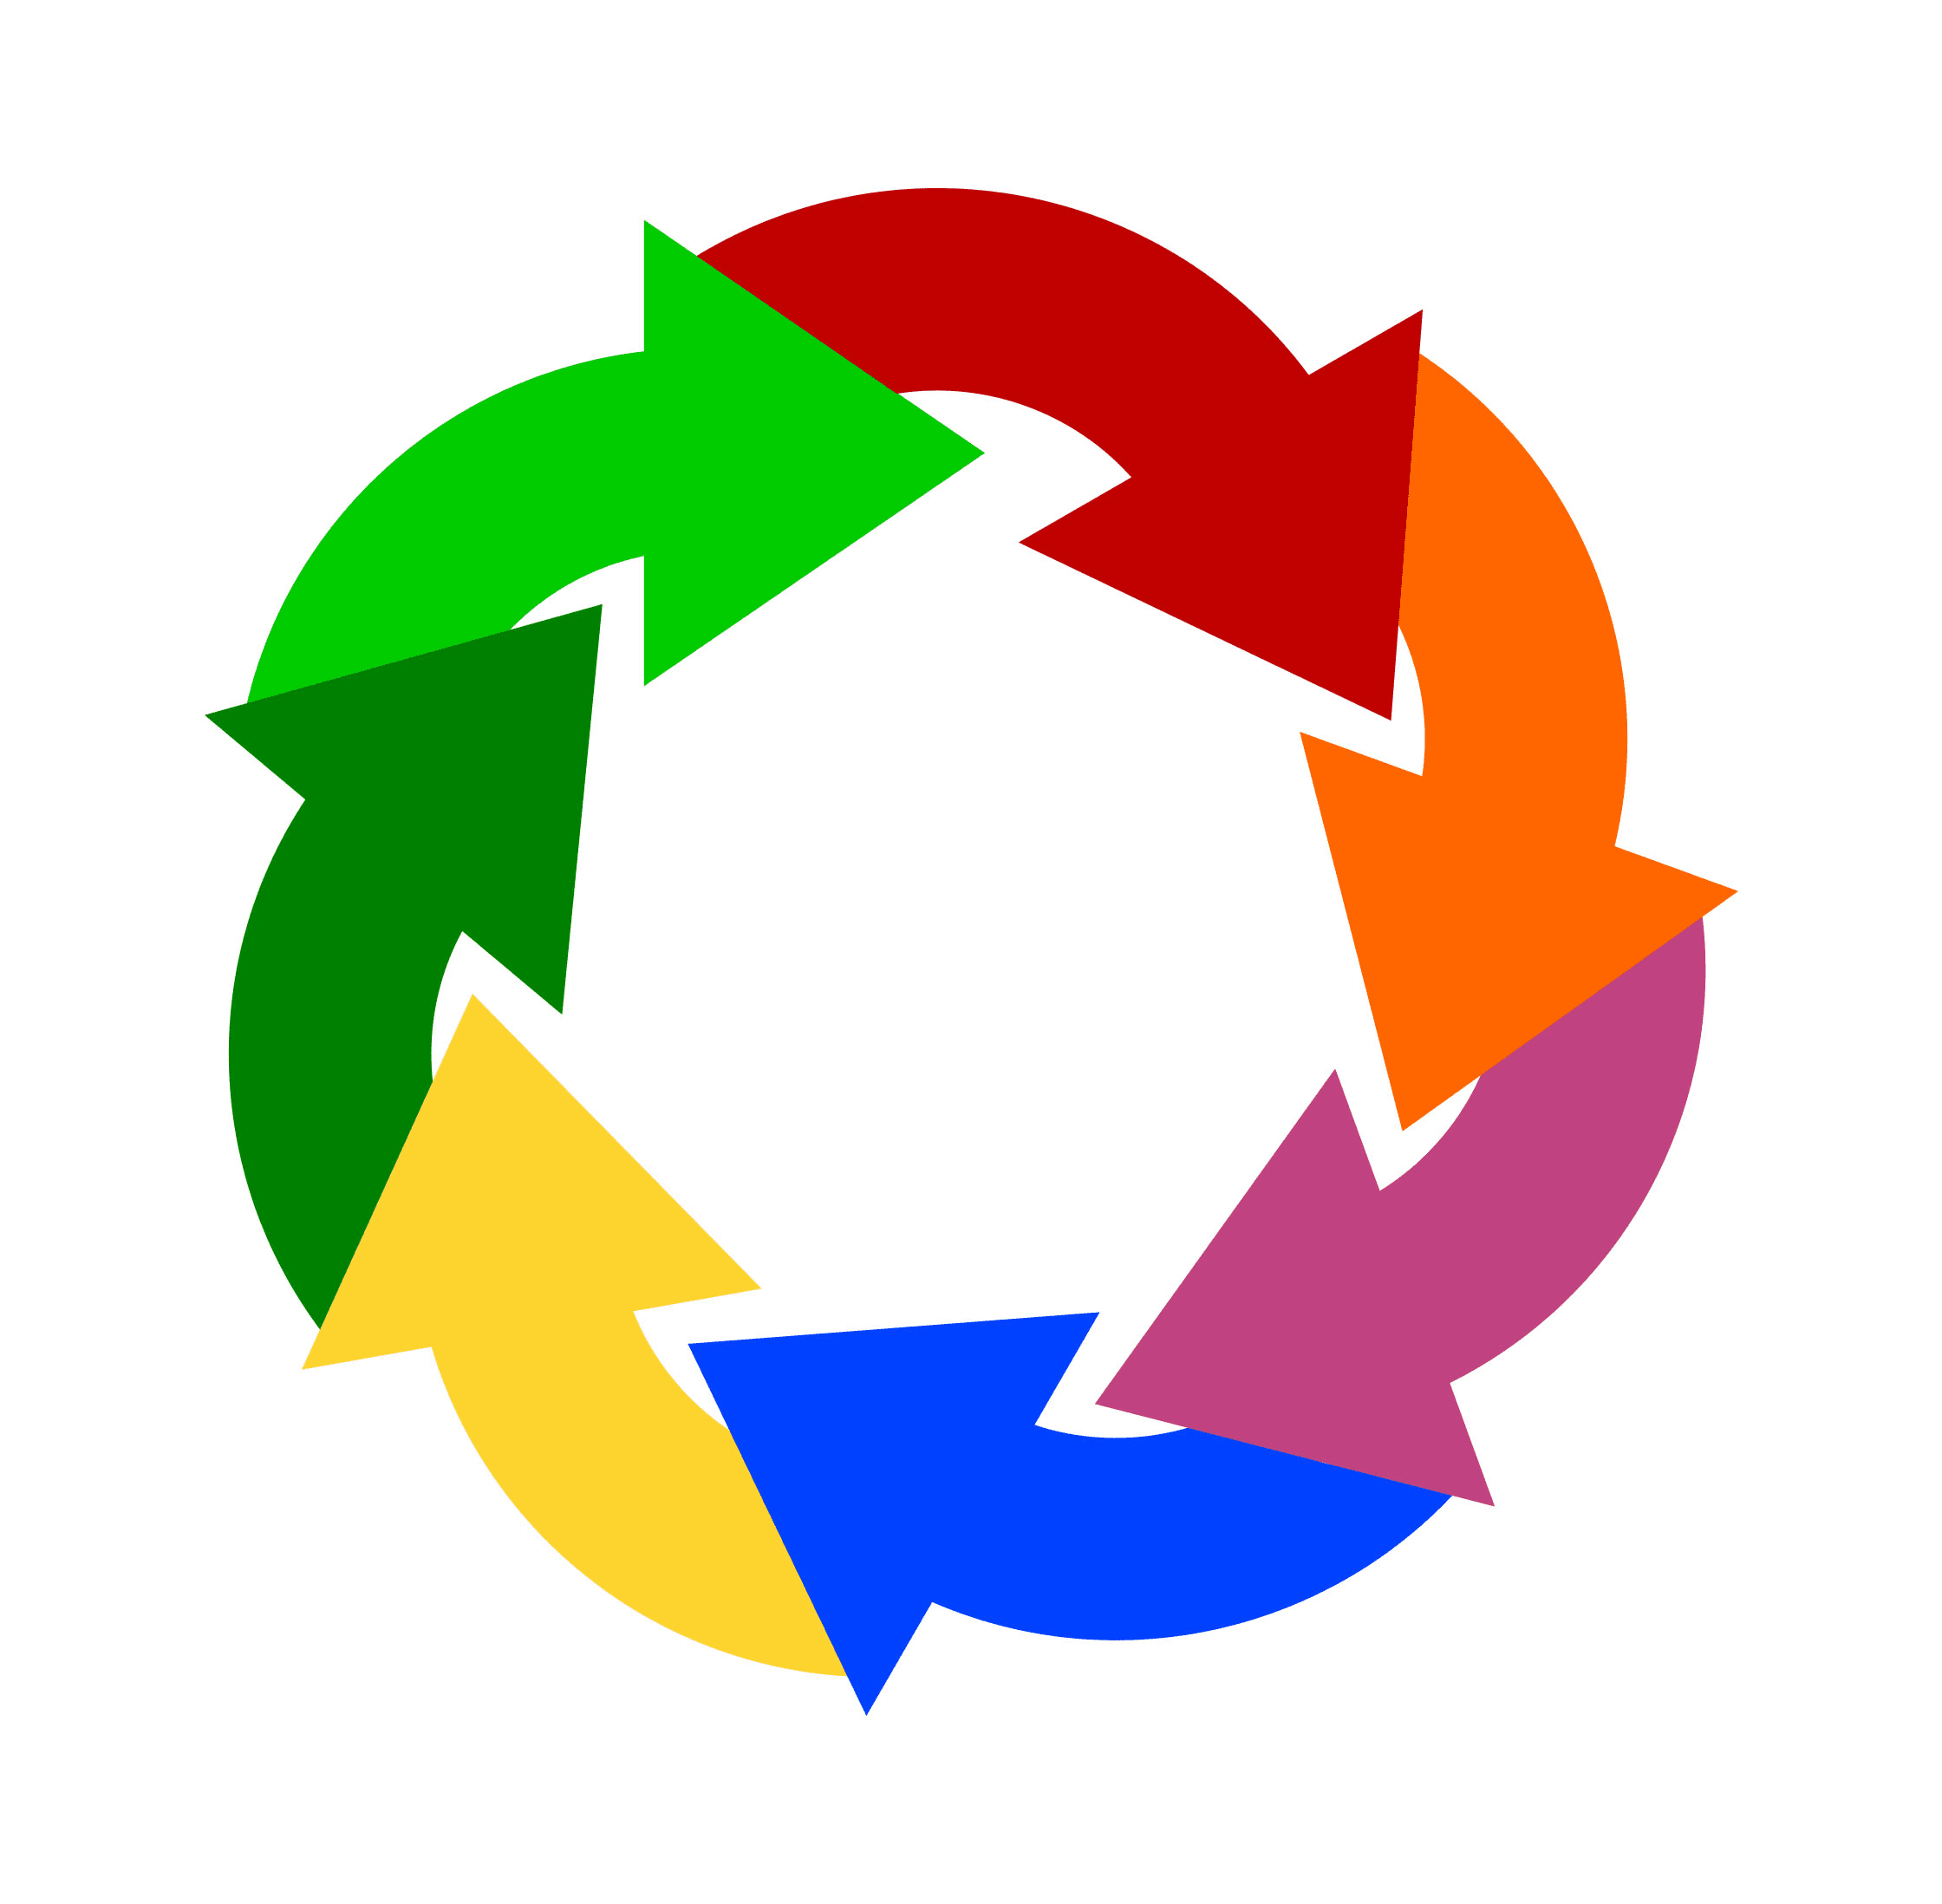 The circular arrows